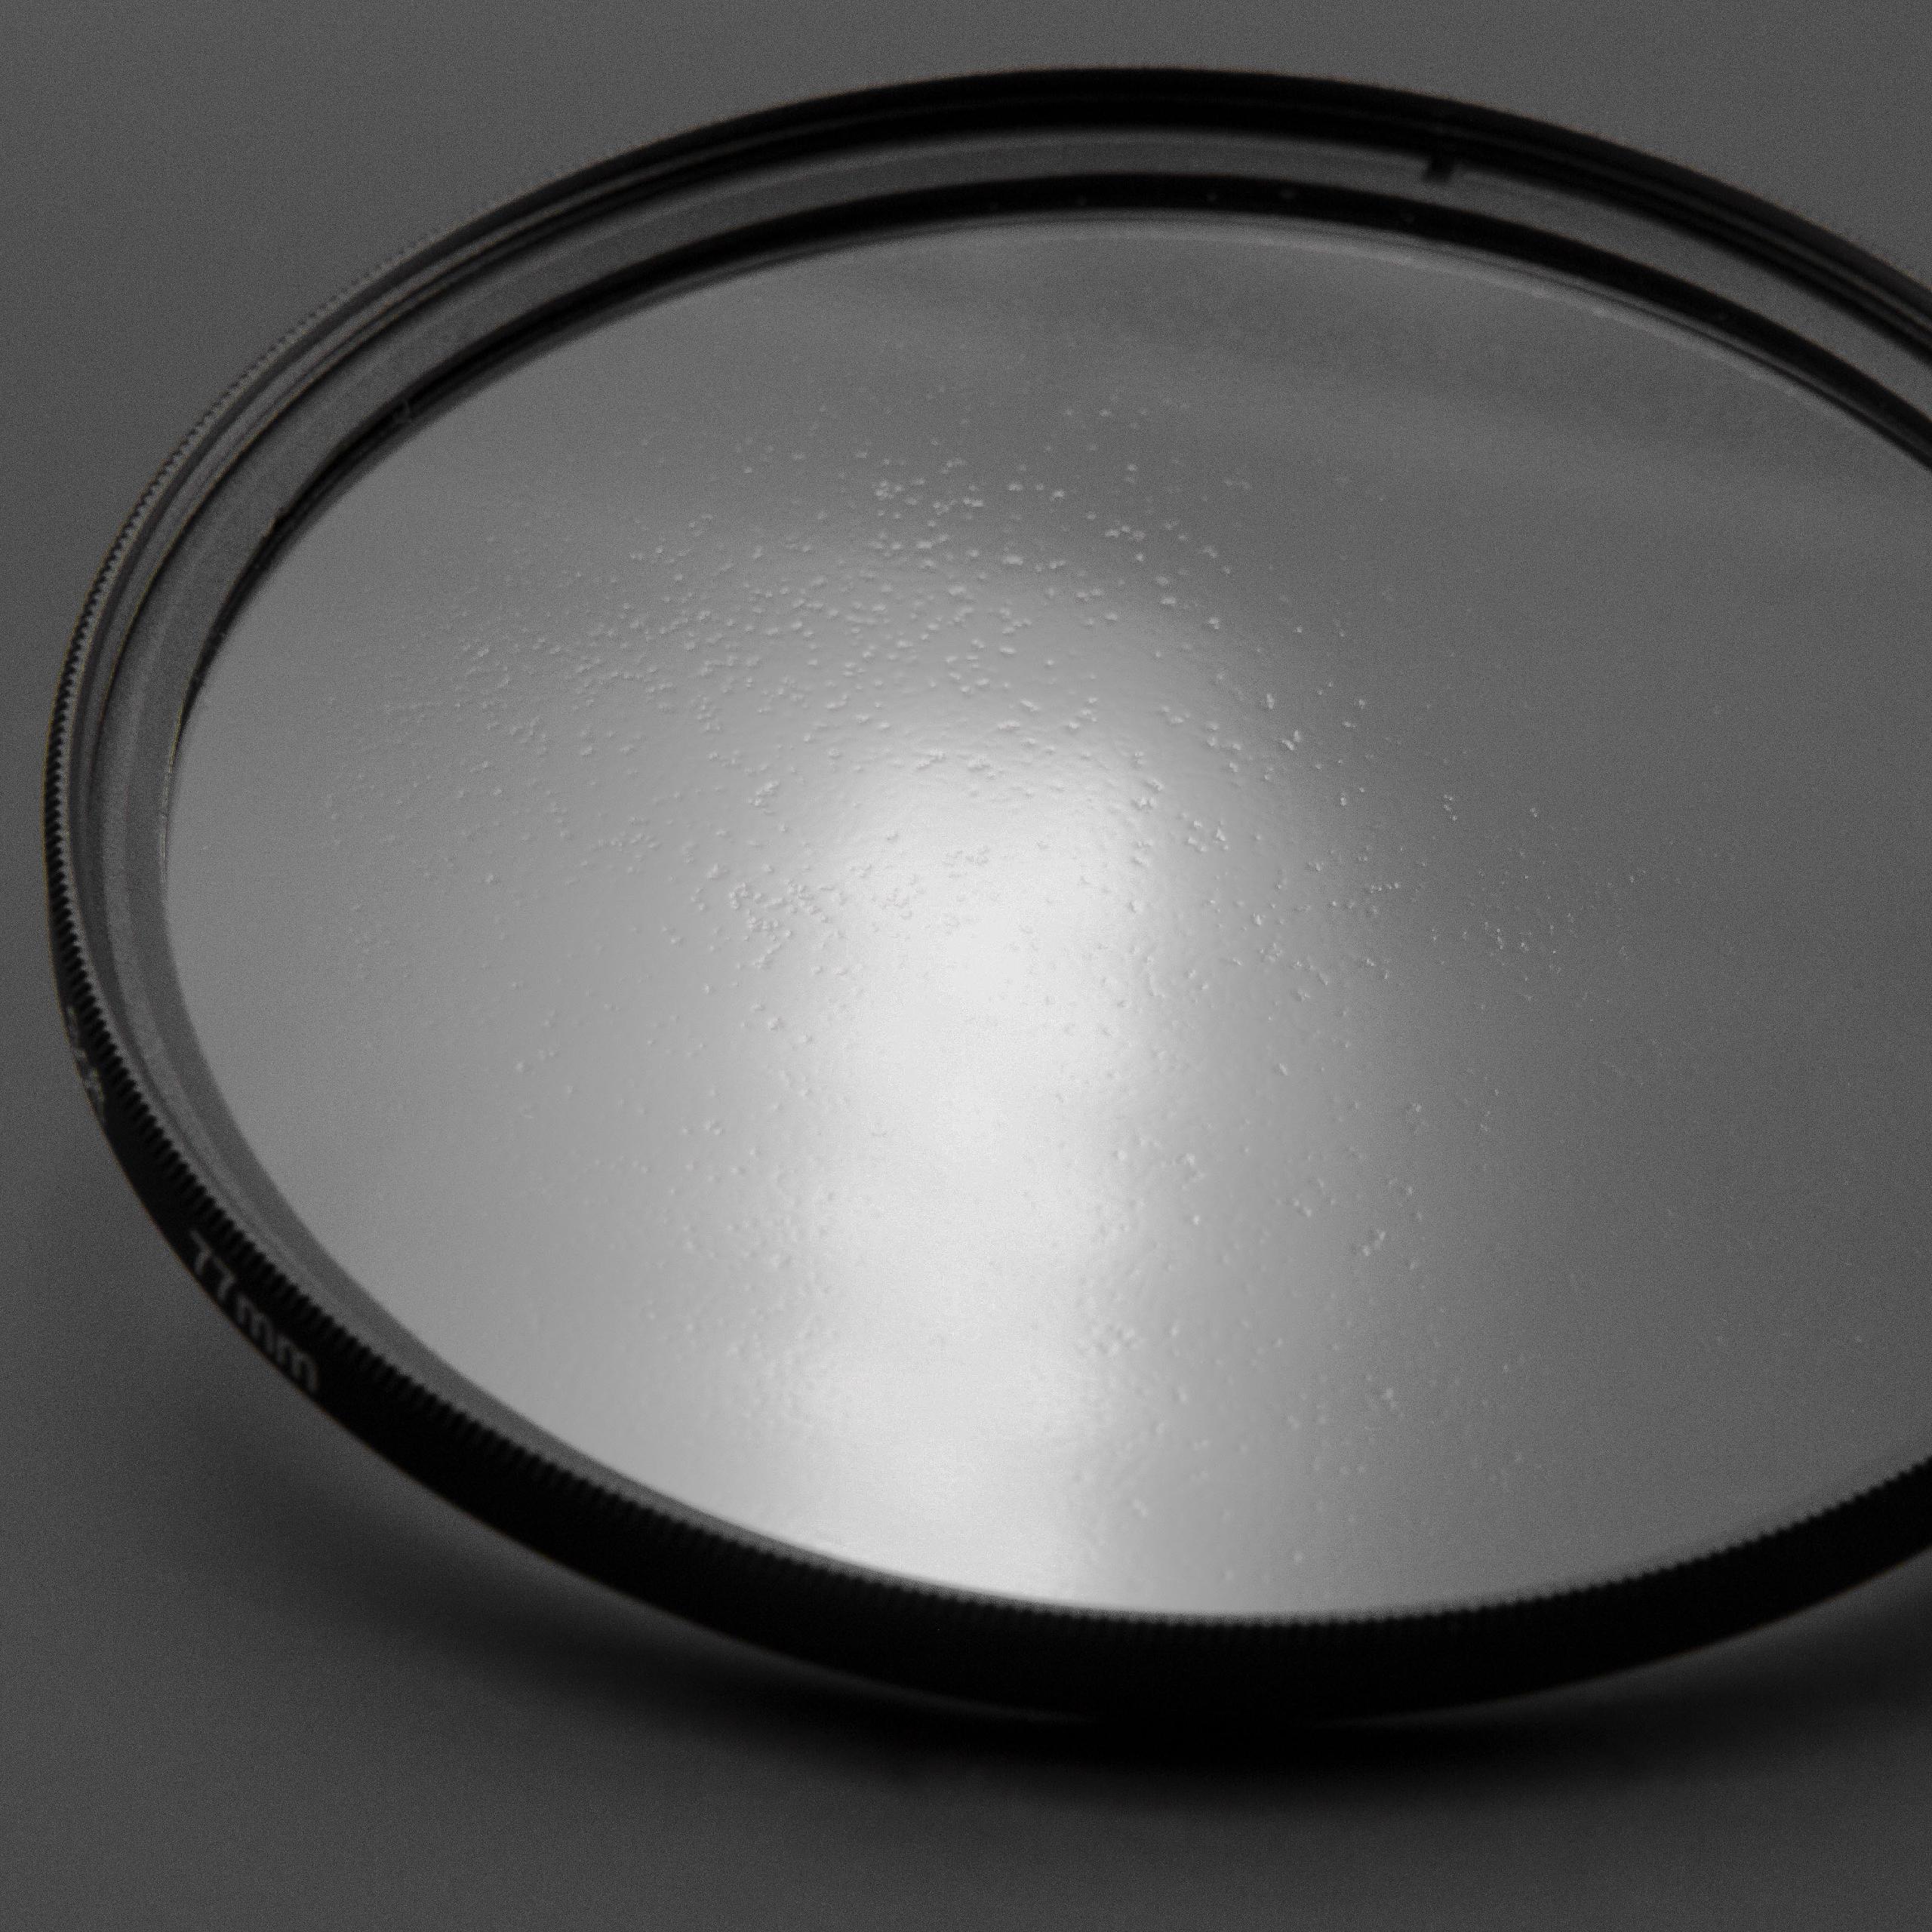 Filtr dyfuzyjny 77mm na obiektyw do różnych aparatów - filtr soft focus